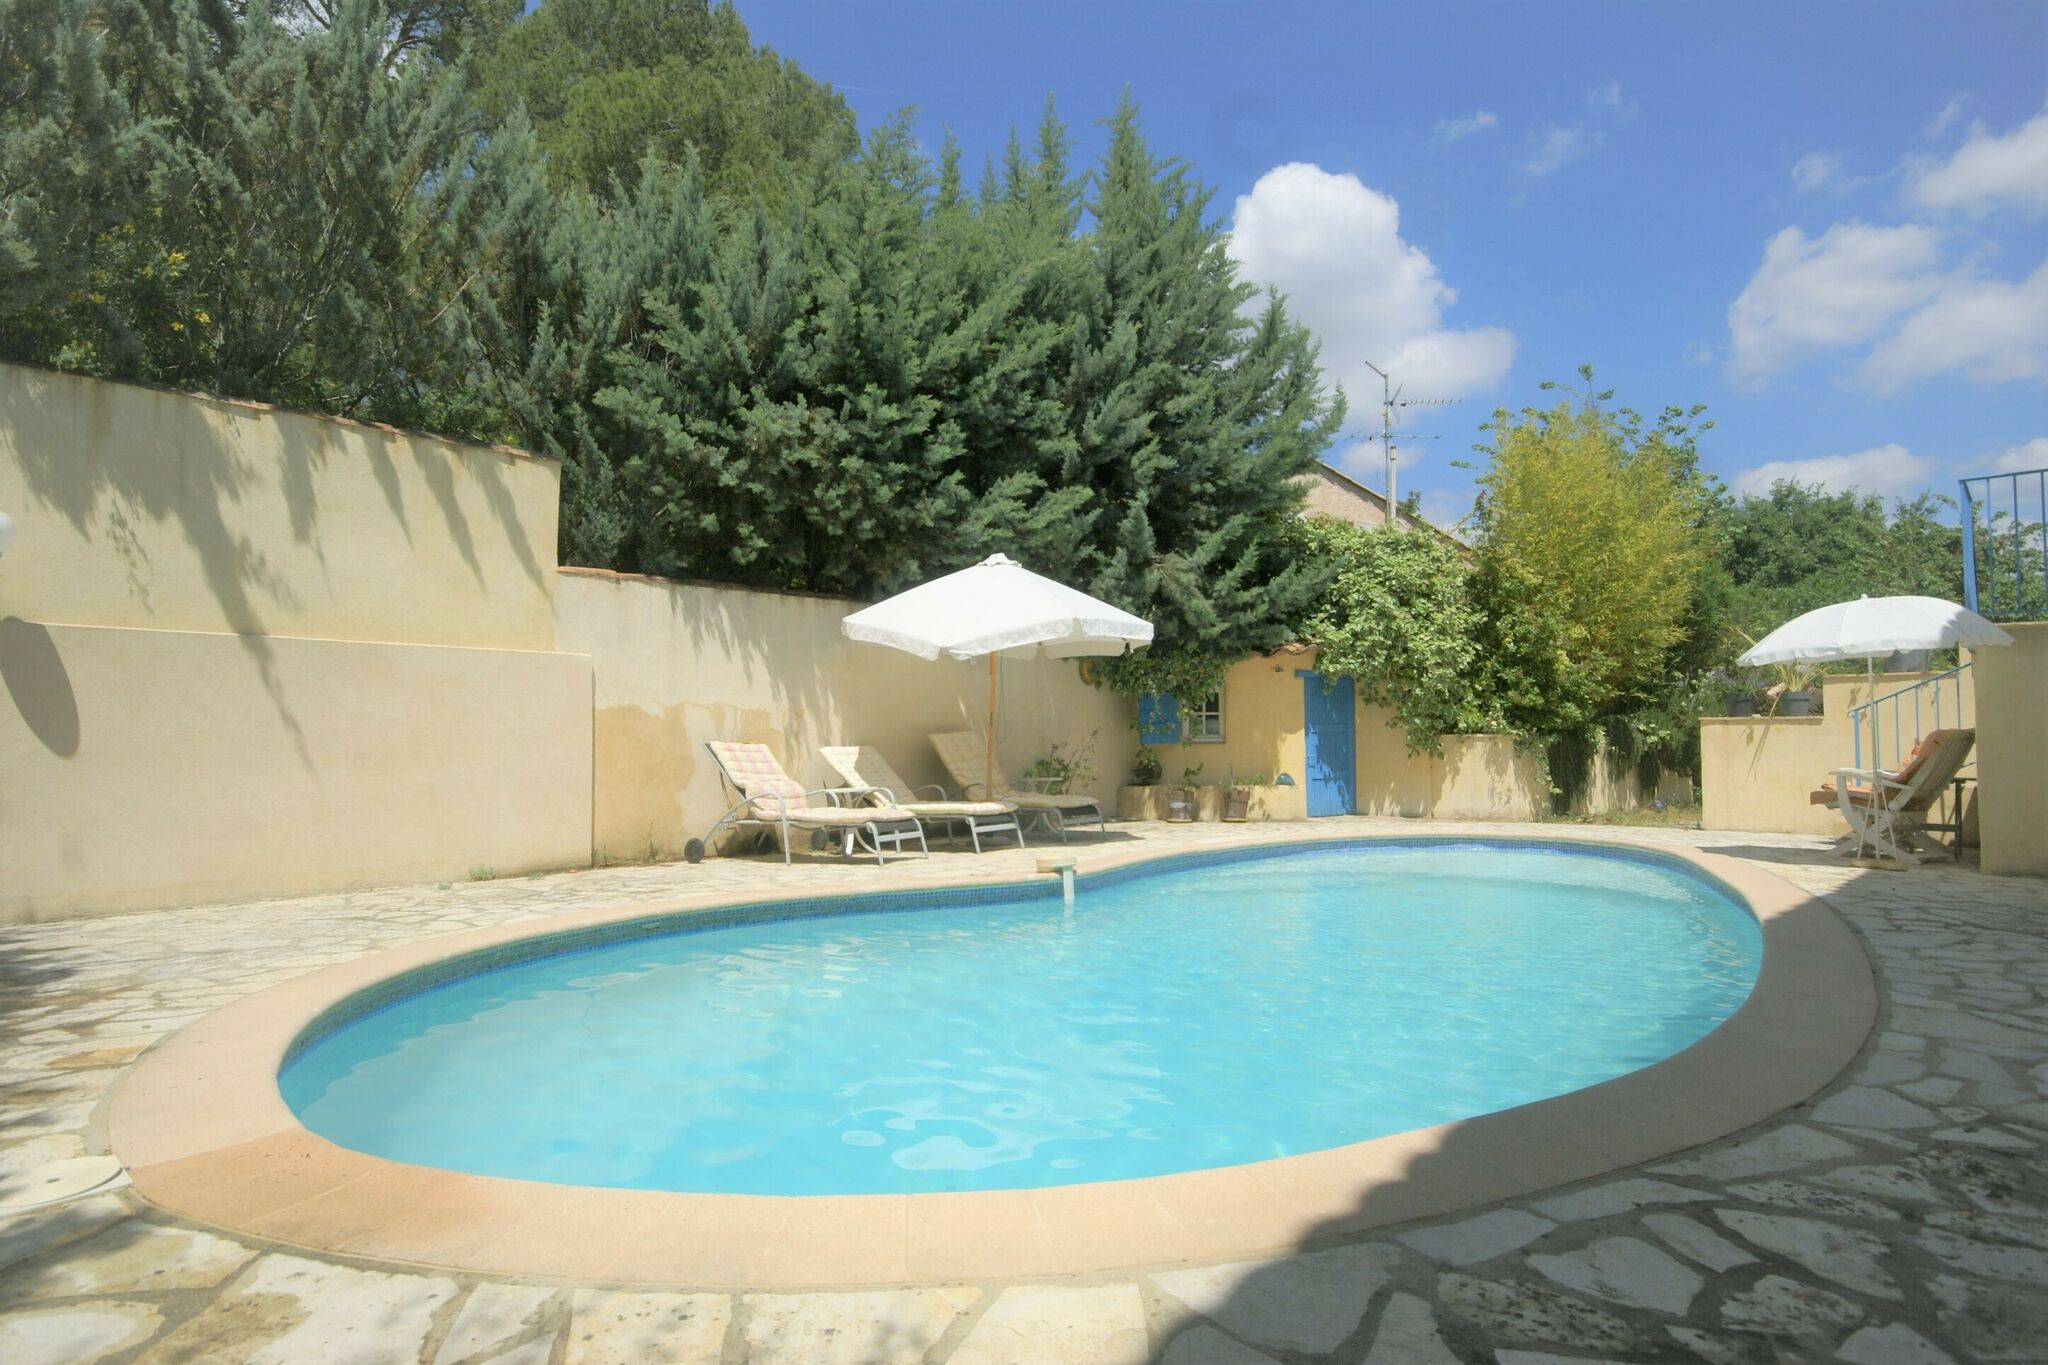 Maison de vacances spacieuse à Lorgues avec piscine